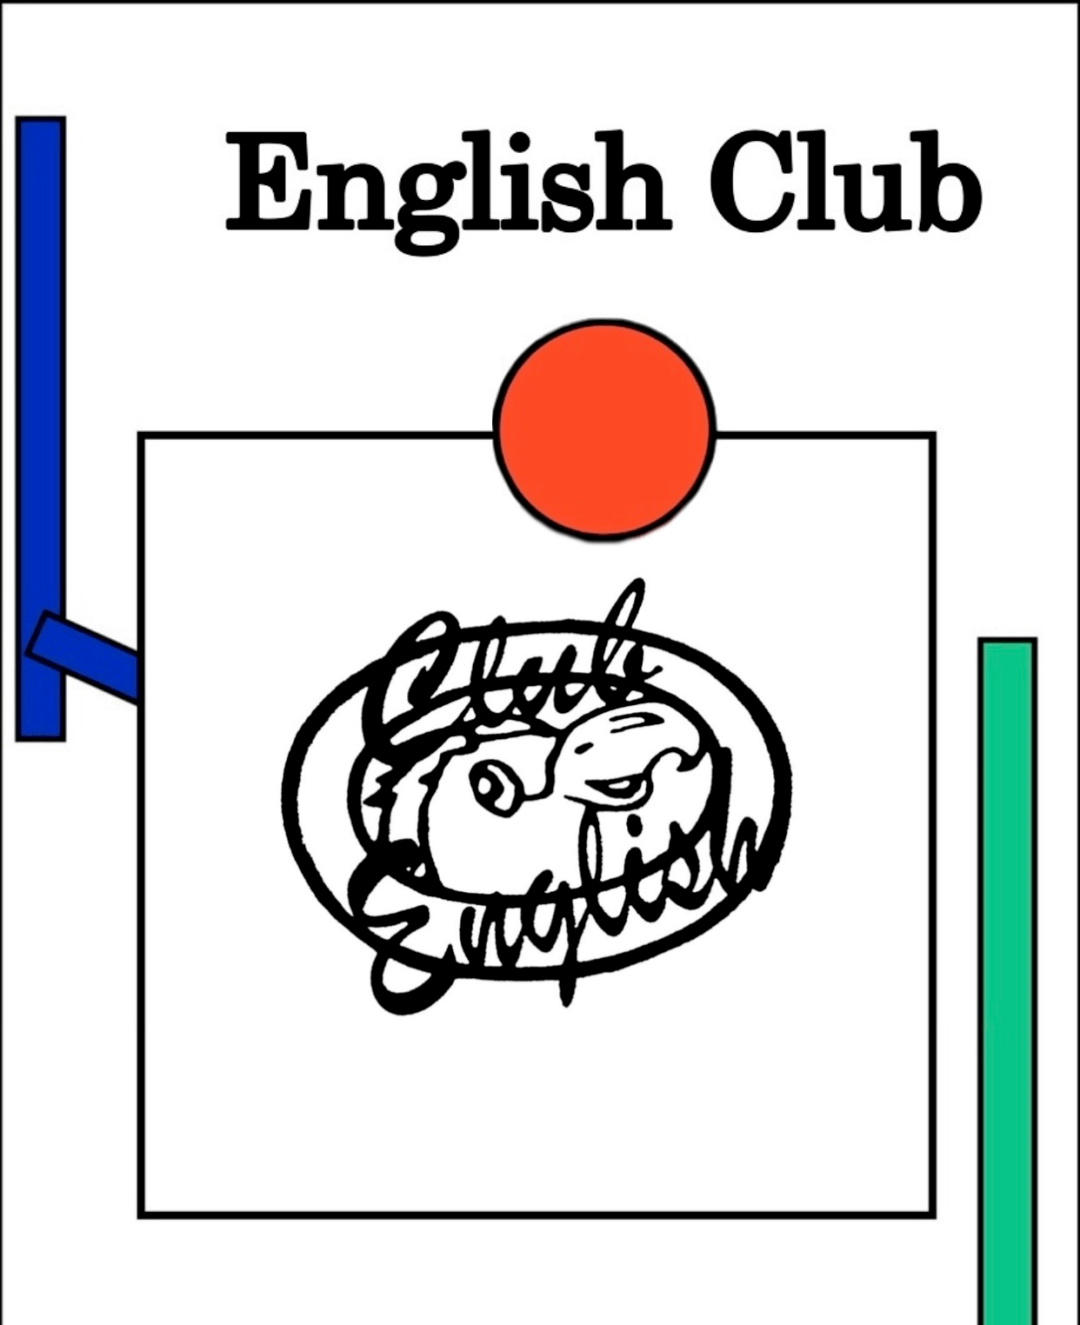 广东食品药品职业学院英语俱乐部成立于1997年,隶属于学校社团联合会